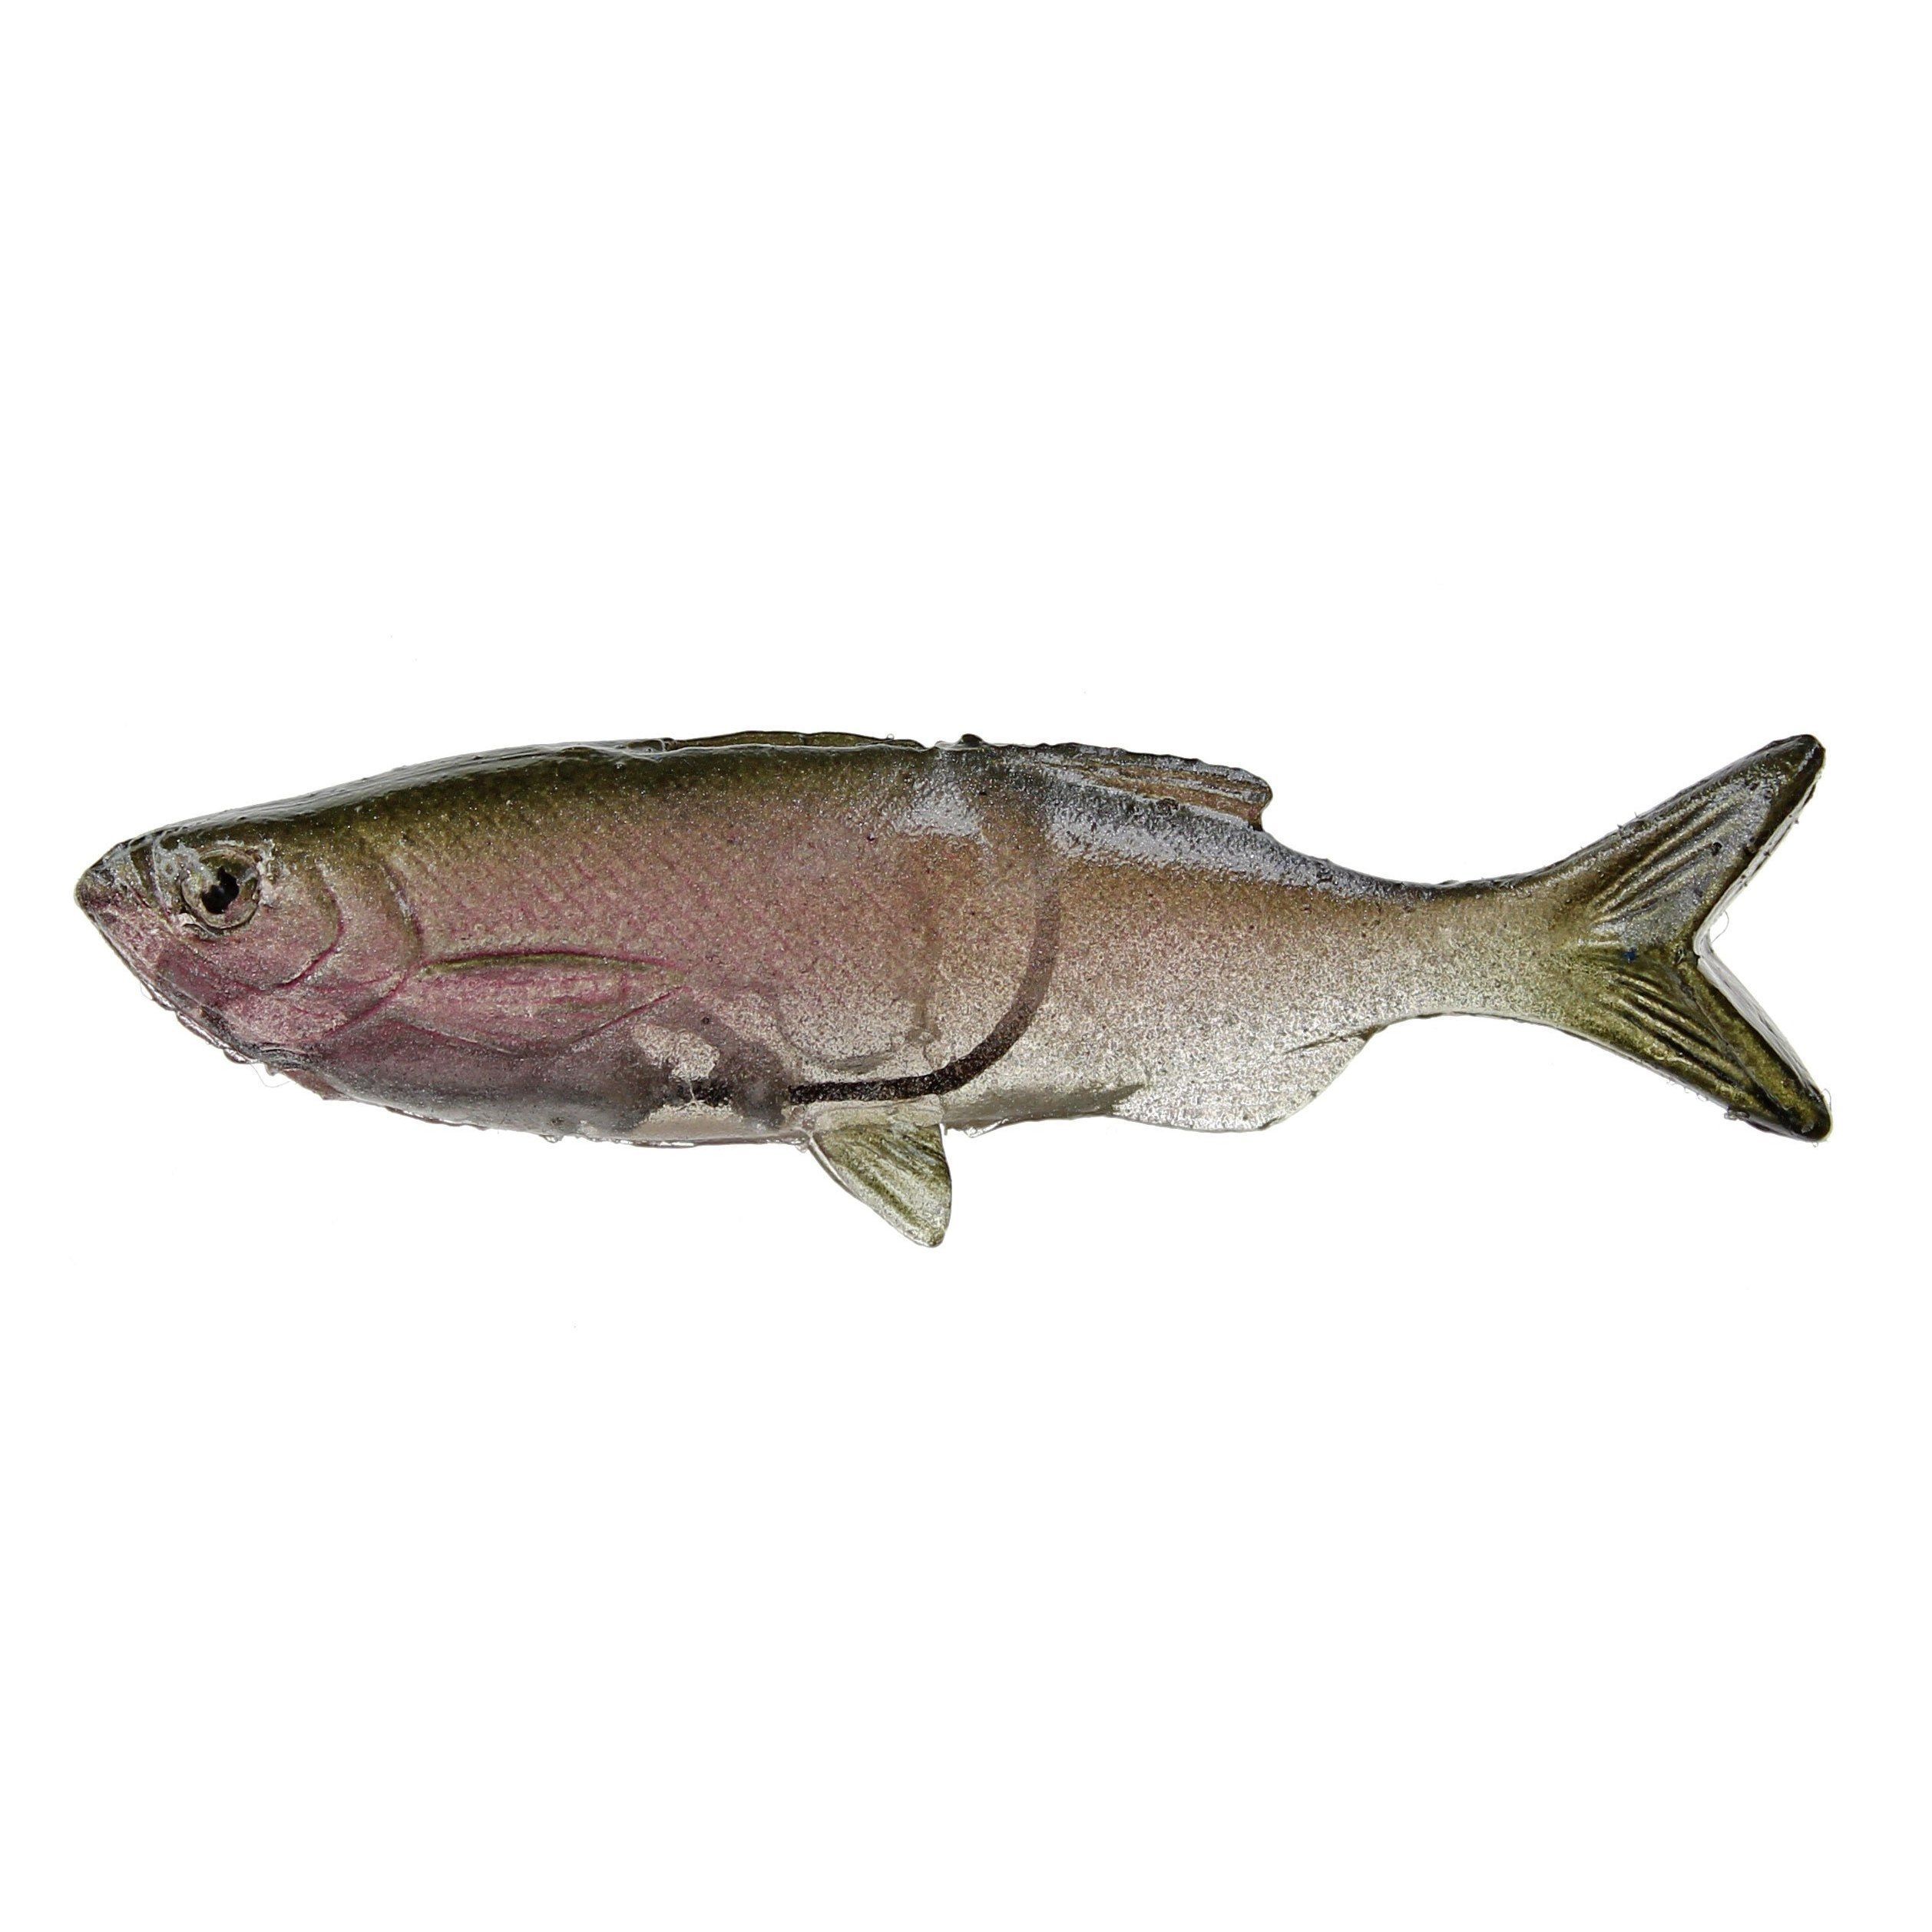 http://www.hammondsfishing.com/cdn/shop/products/Huddleston-Weedless-Grass-Minnow-Trout-Minnow_53dc77ff-72b2-4b0c-8b40-f2eccc37e158.jpg?v=1640153344